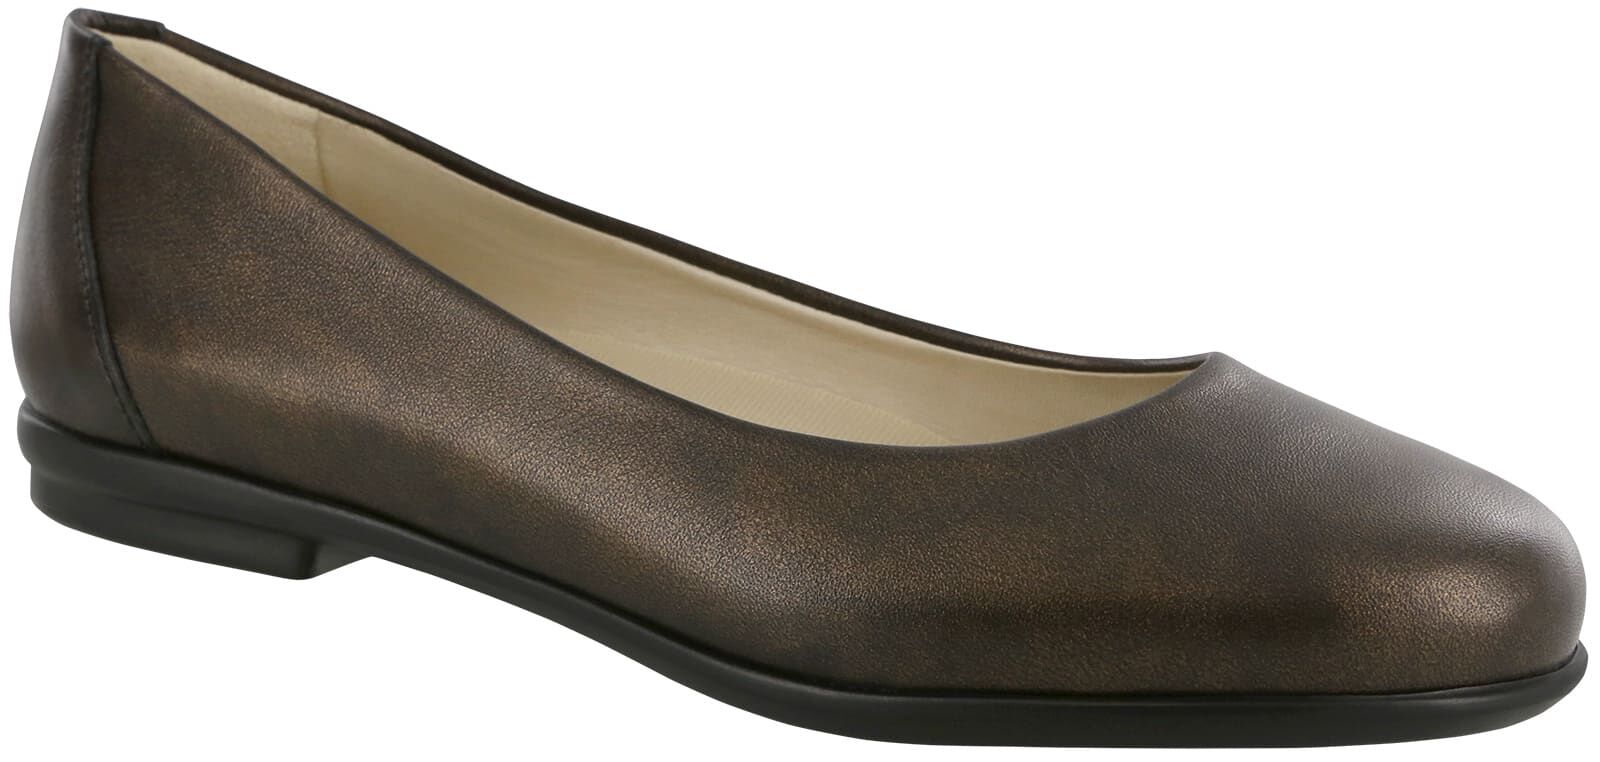 bronze ballet shoes